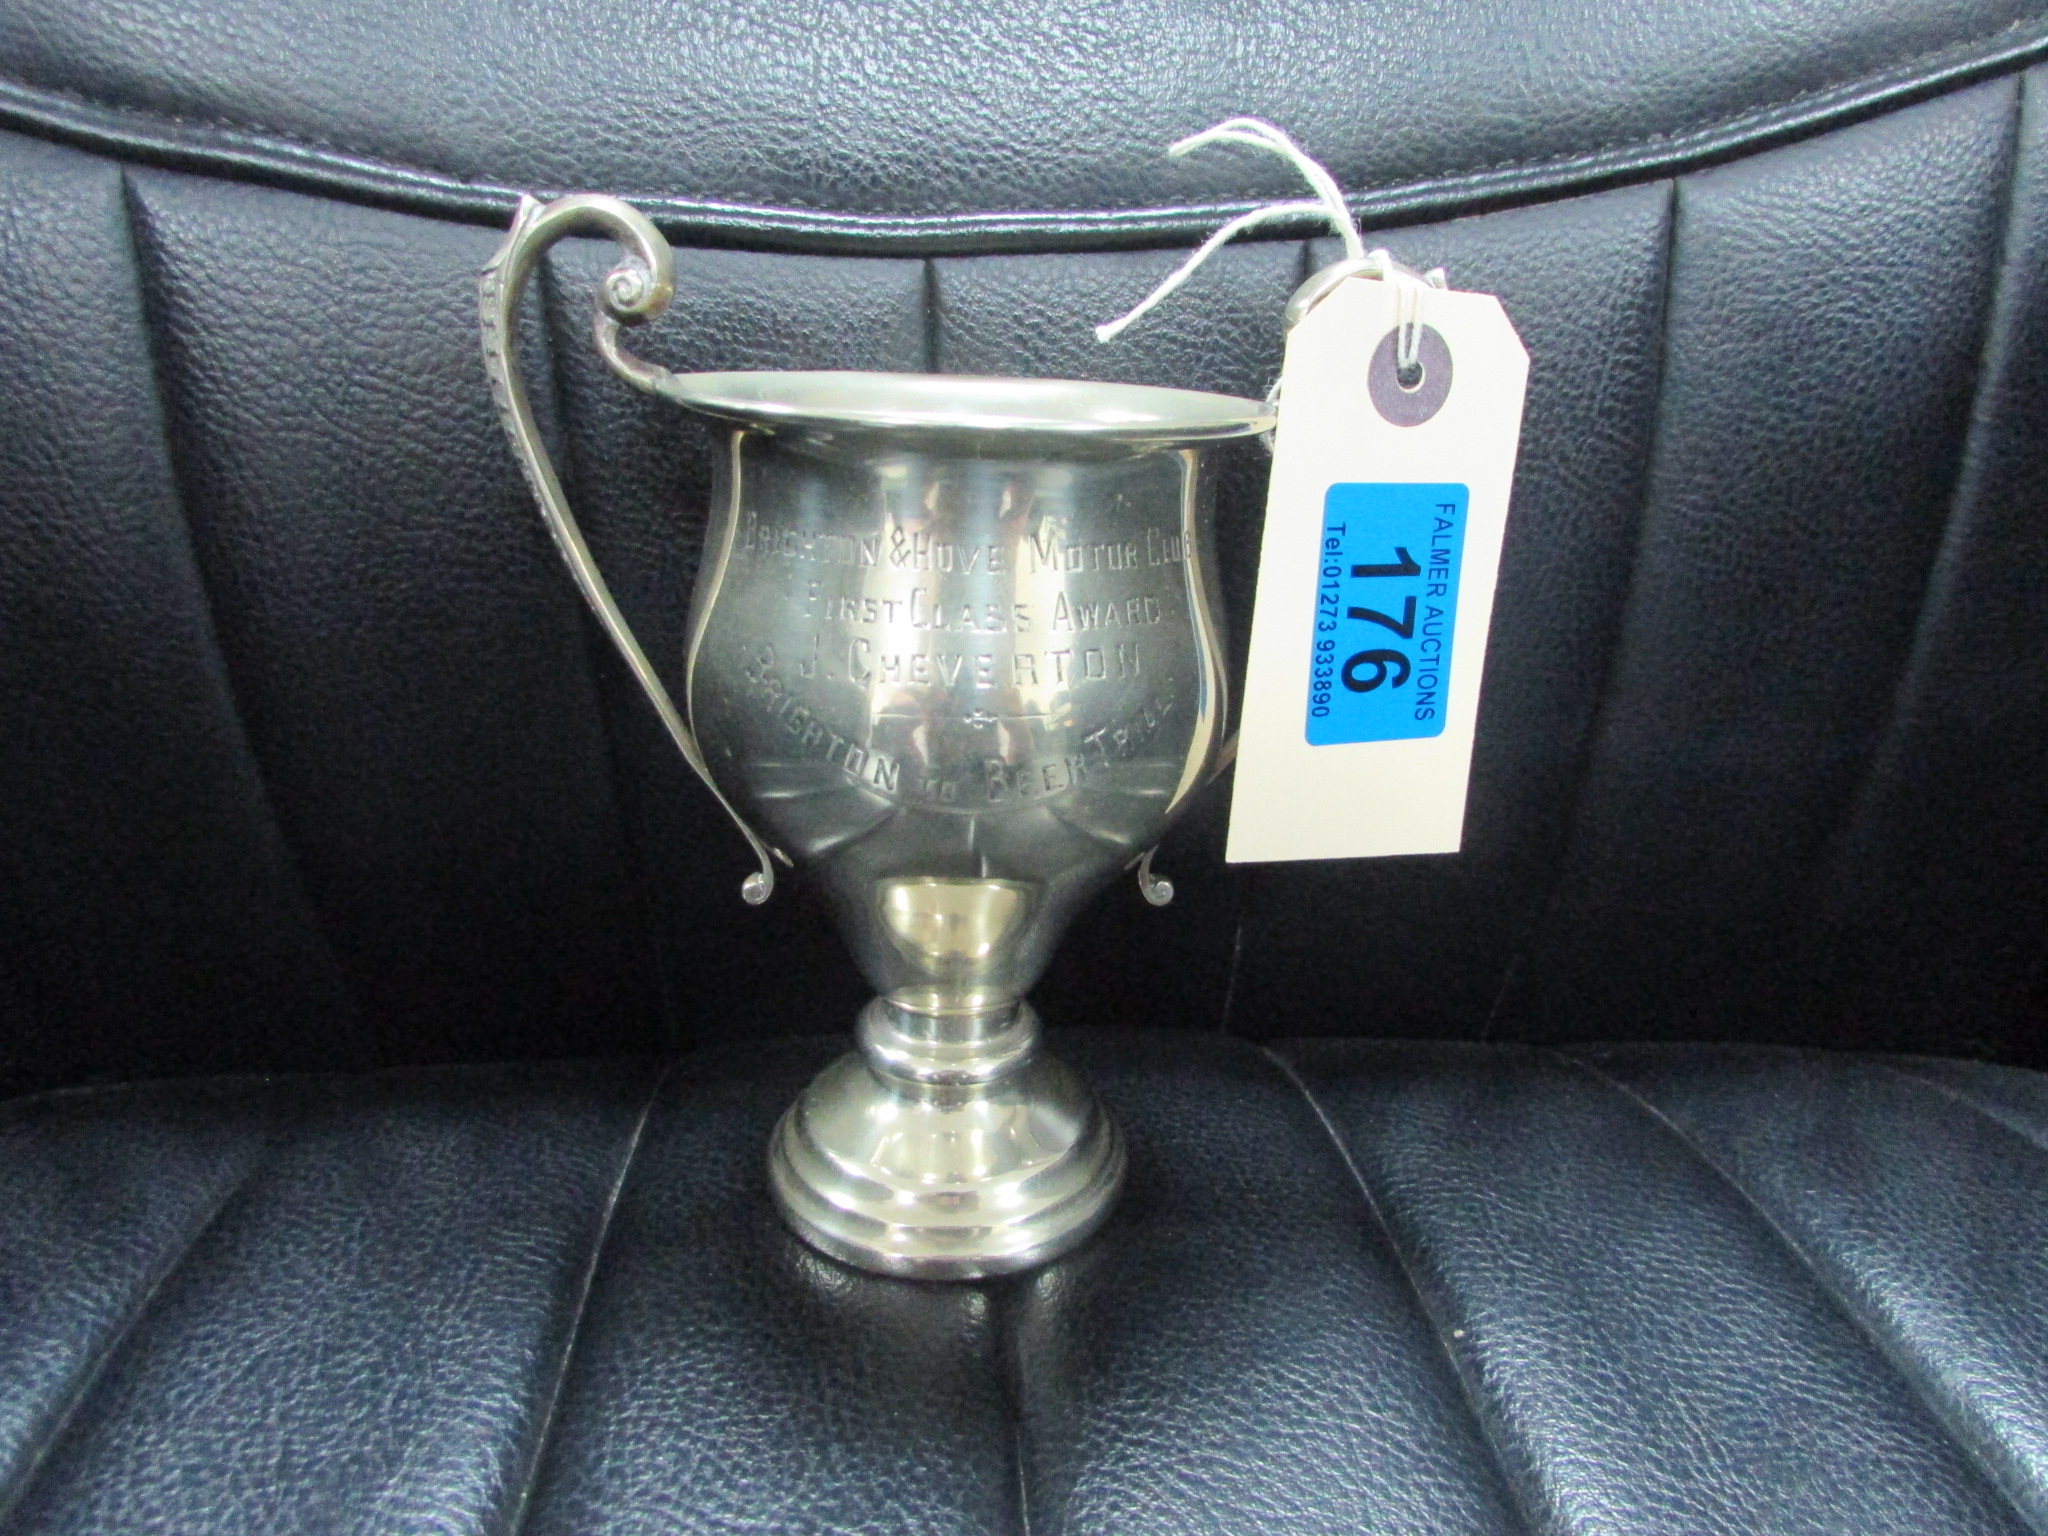 Brighton & Hove Motor Club Trophy